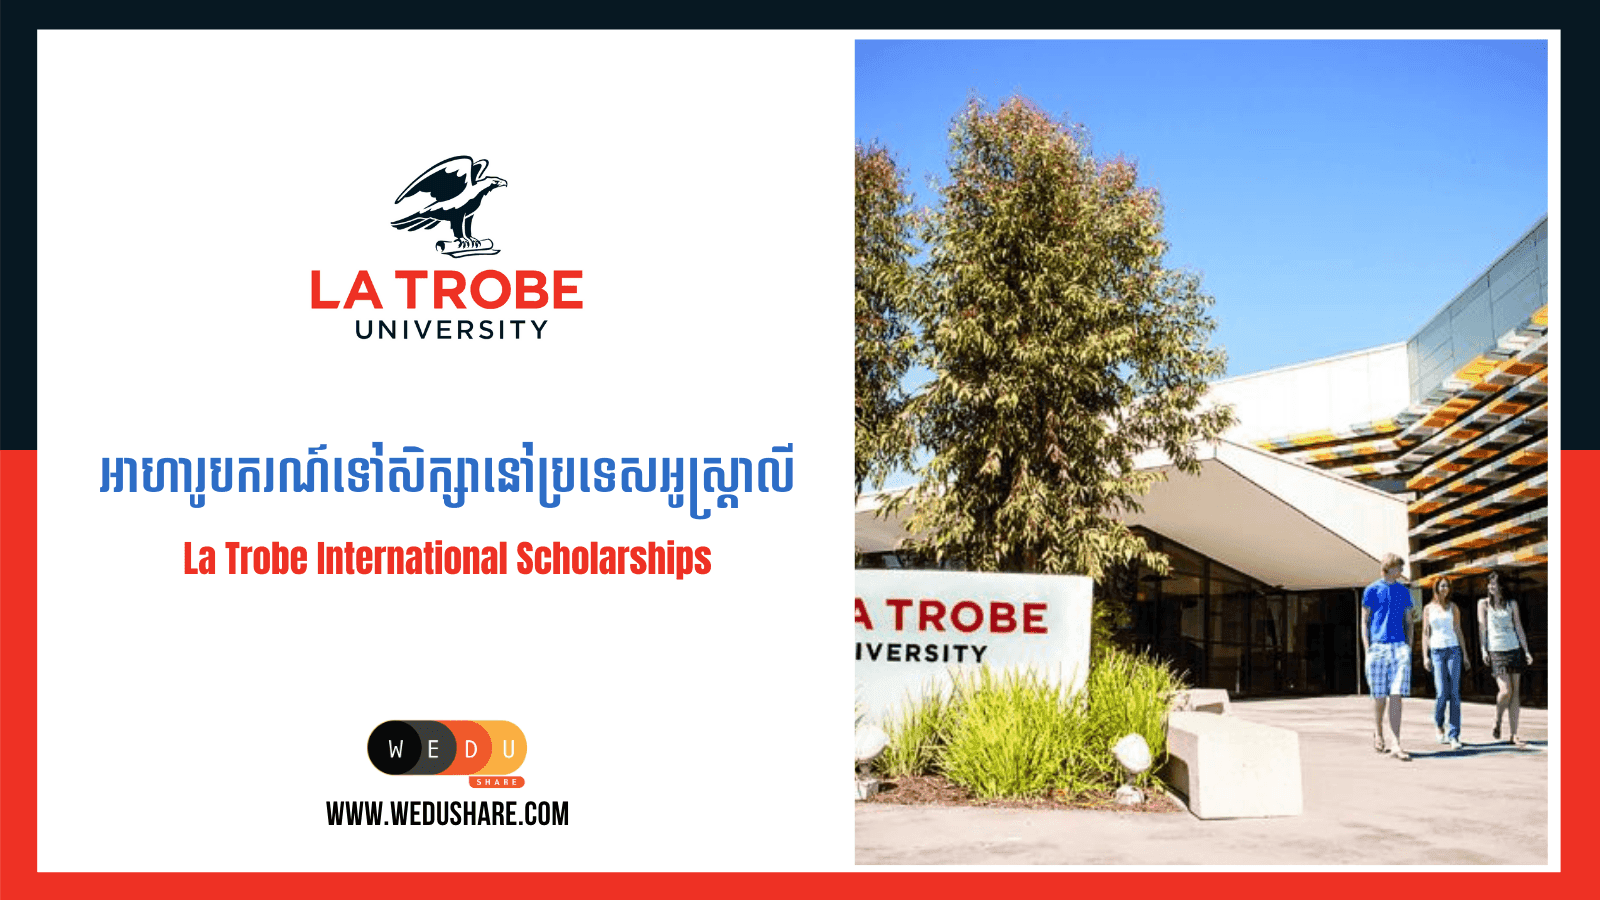 La Trobe International Scholarships